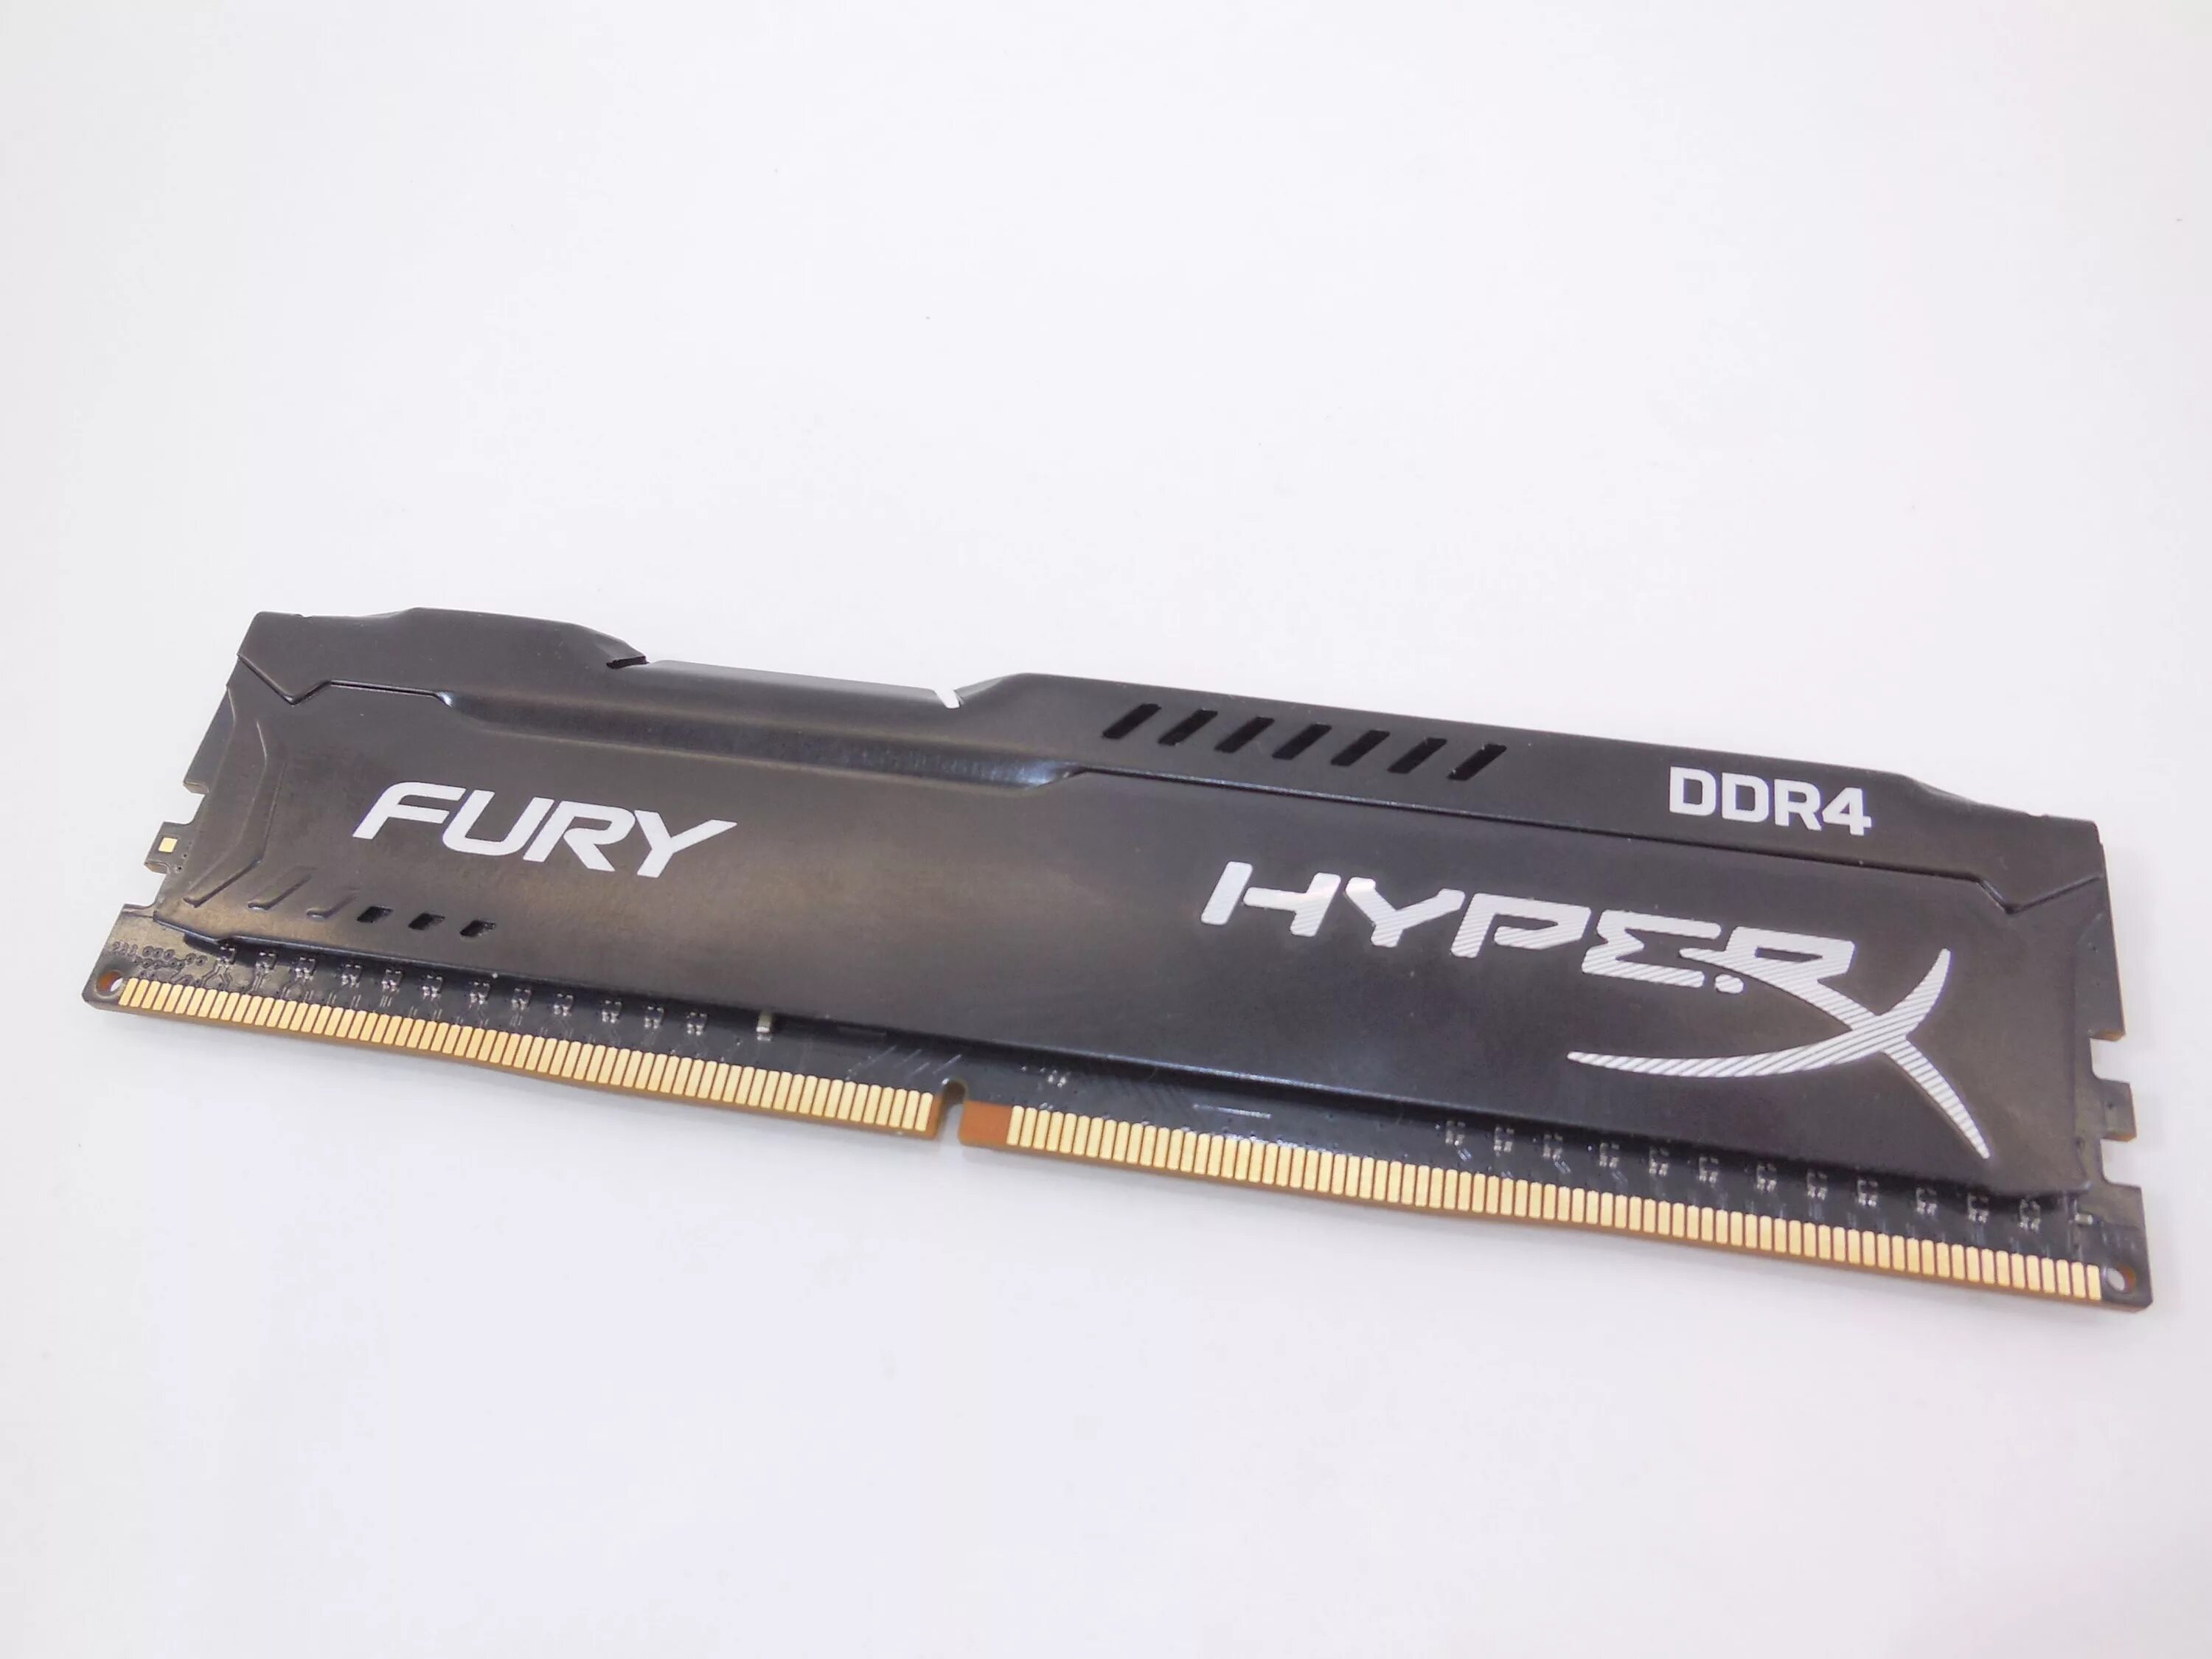 HYPERX Fury ddr4 8gb. Оперативная память HYPERX Fury 8gb ddr4. Hyper x ddr4 8gb. Оперативная память HYPERX Fury 4gb ddr4.